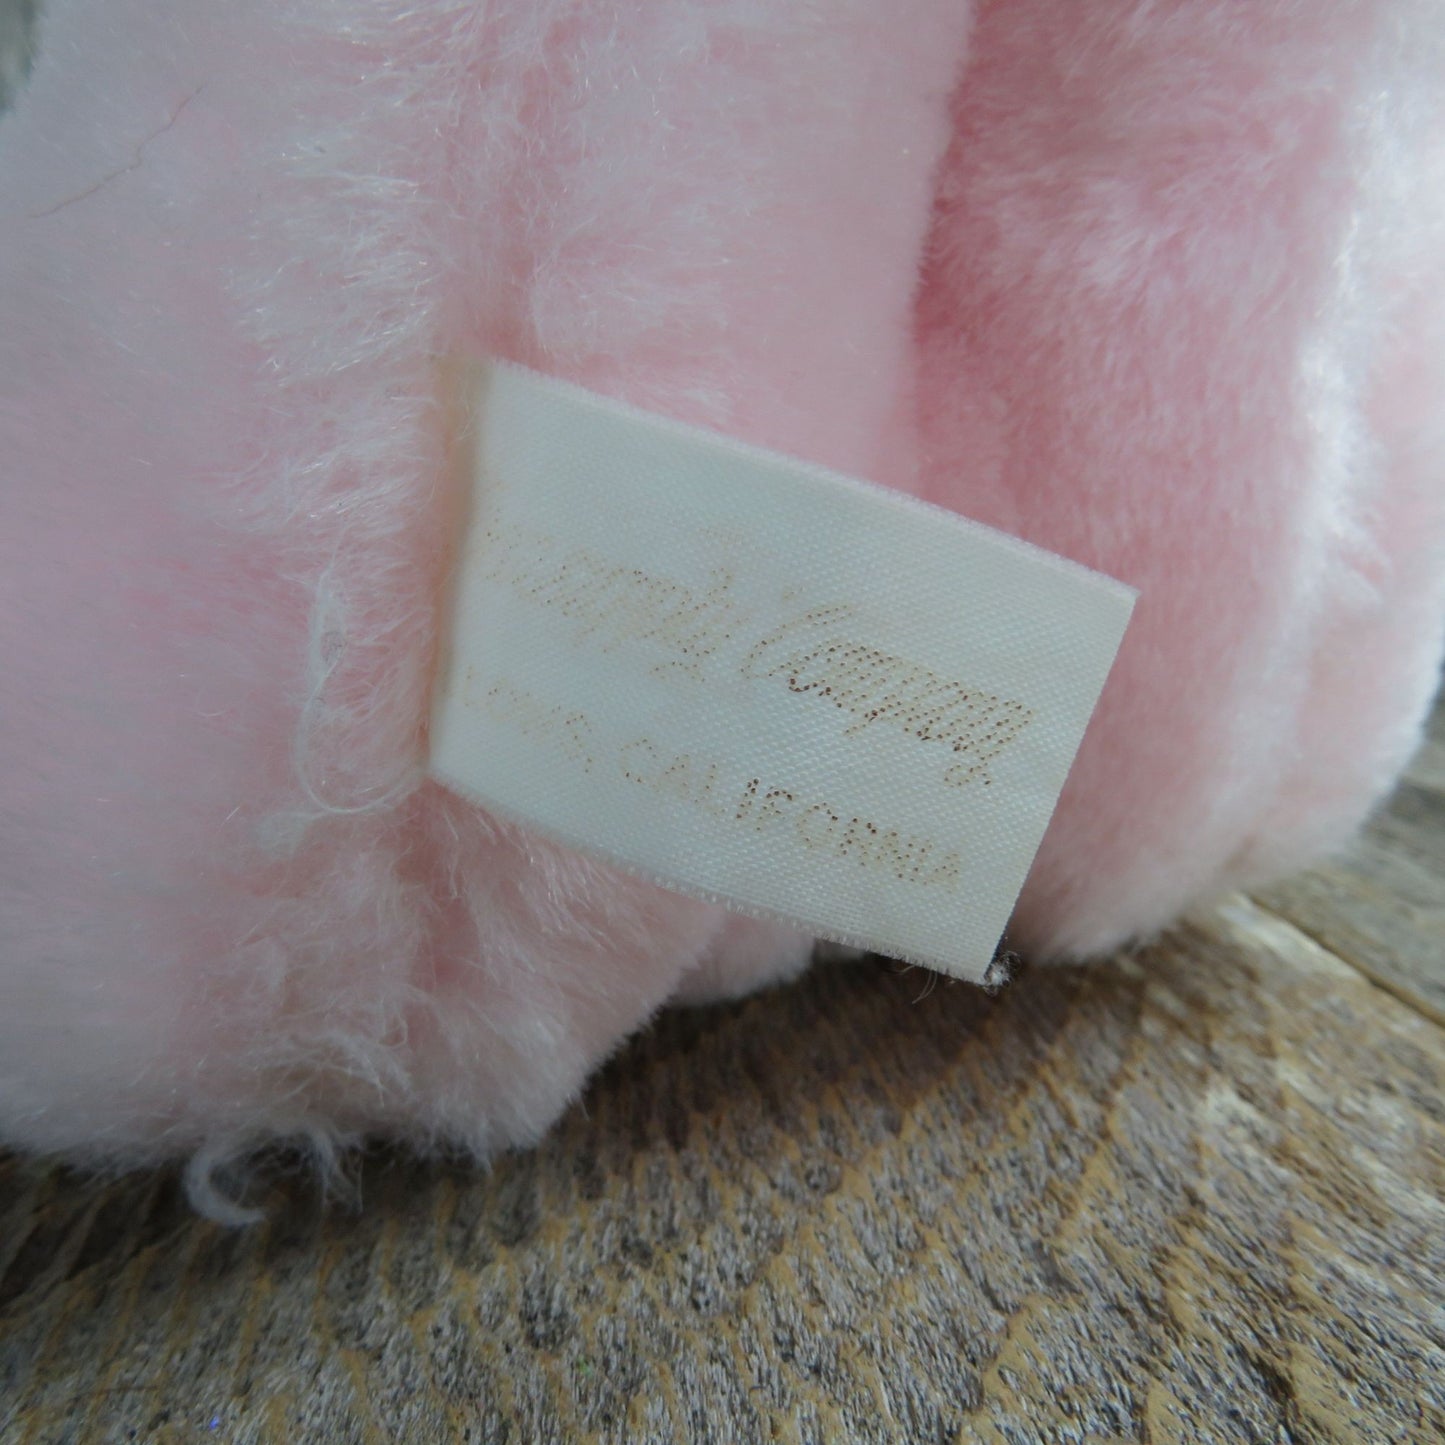 Vintage Praying Bunny Plush Pink Rabbit Stuffed Animal Easter Pink Nose Korea